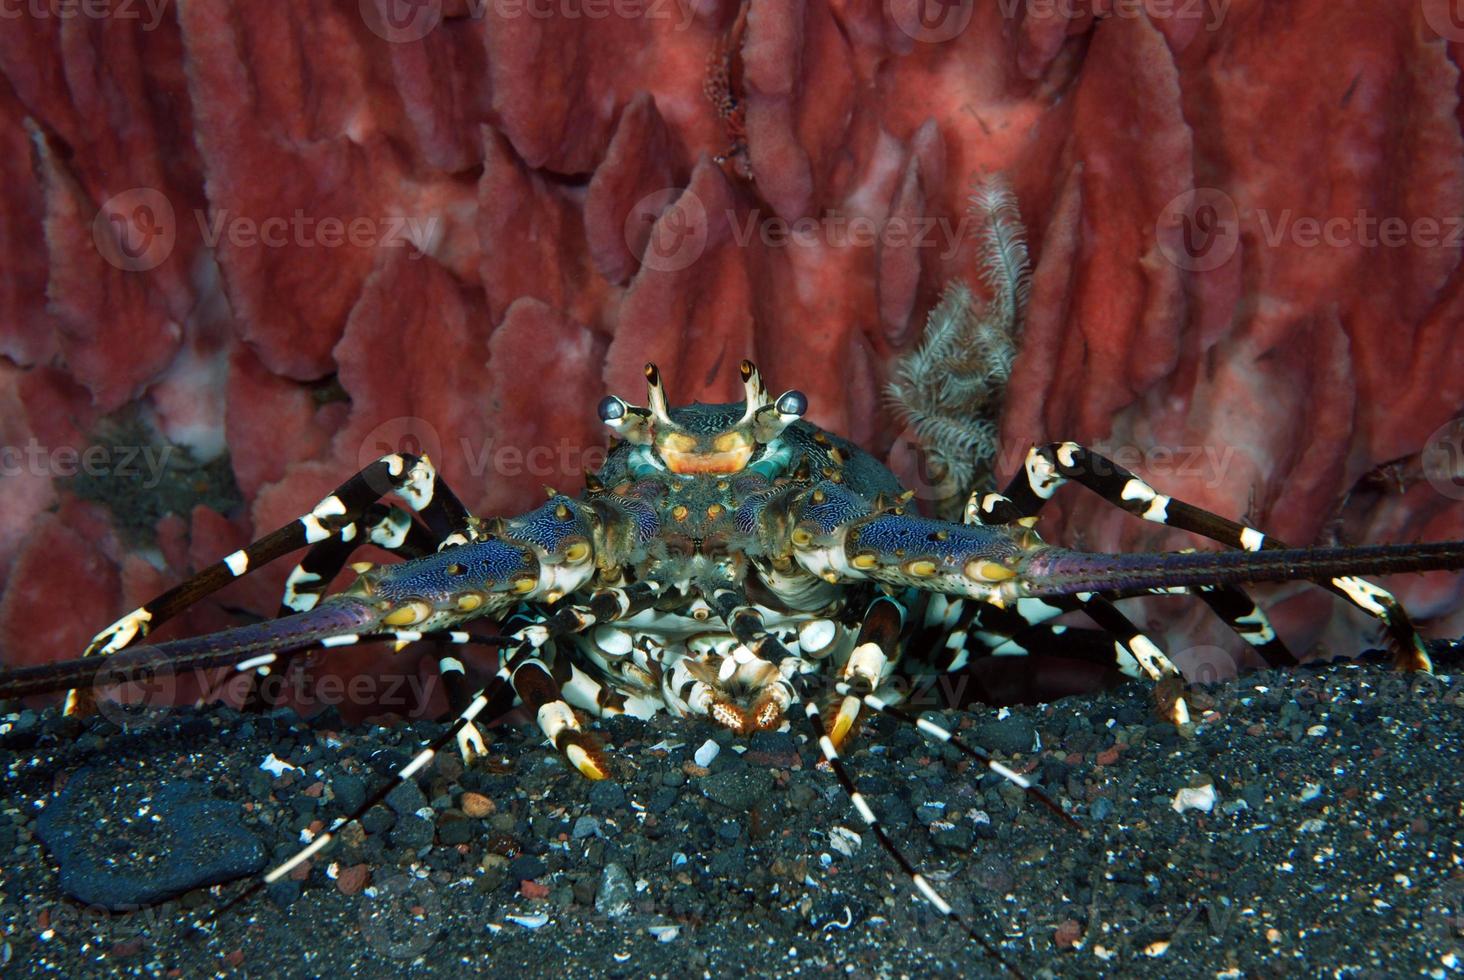 lagosta espinhosa ornamentada vivendo sob uma esponja. foto